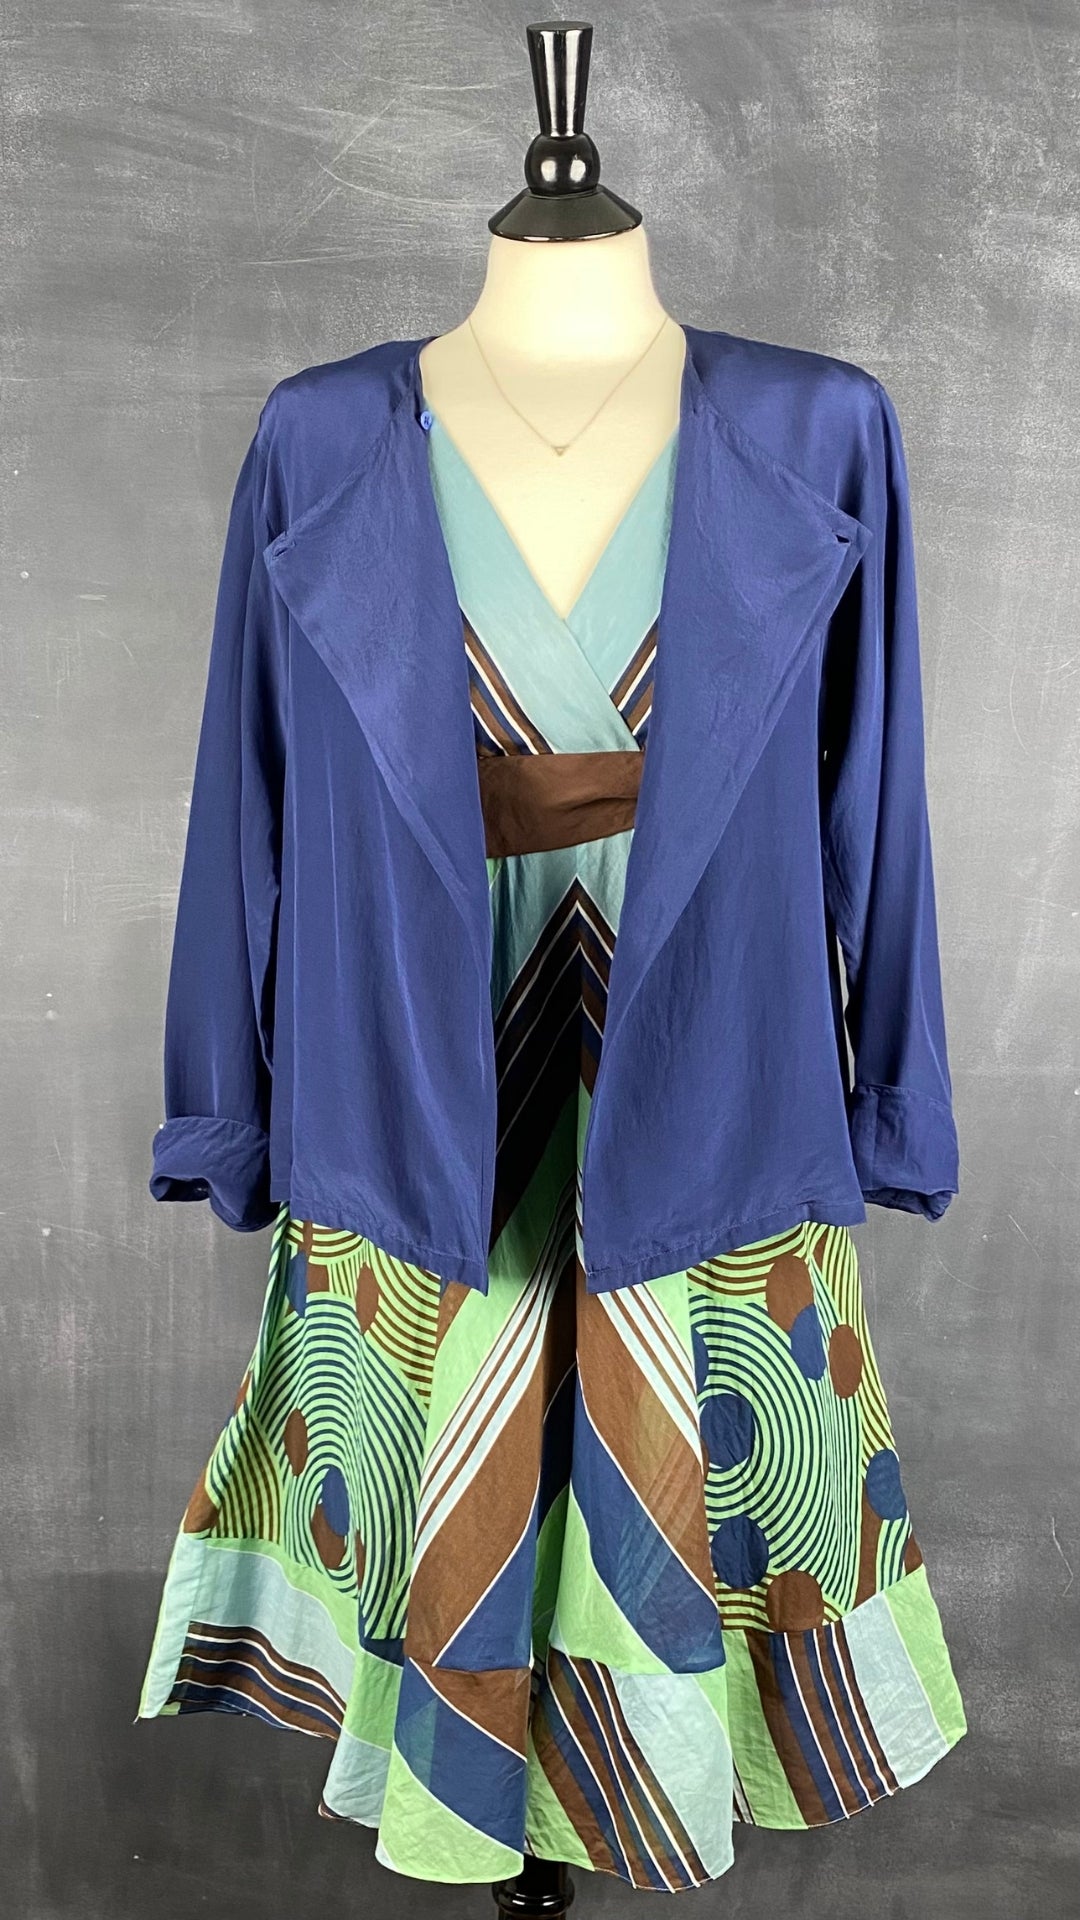 Robe à rayures et motifs géo en soie et coton BCBG Max Azria, taille 6. Vue de l'agencement avec la veste en soie Calvin Klein.